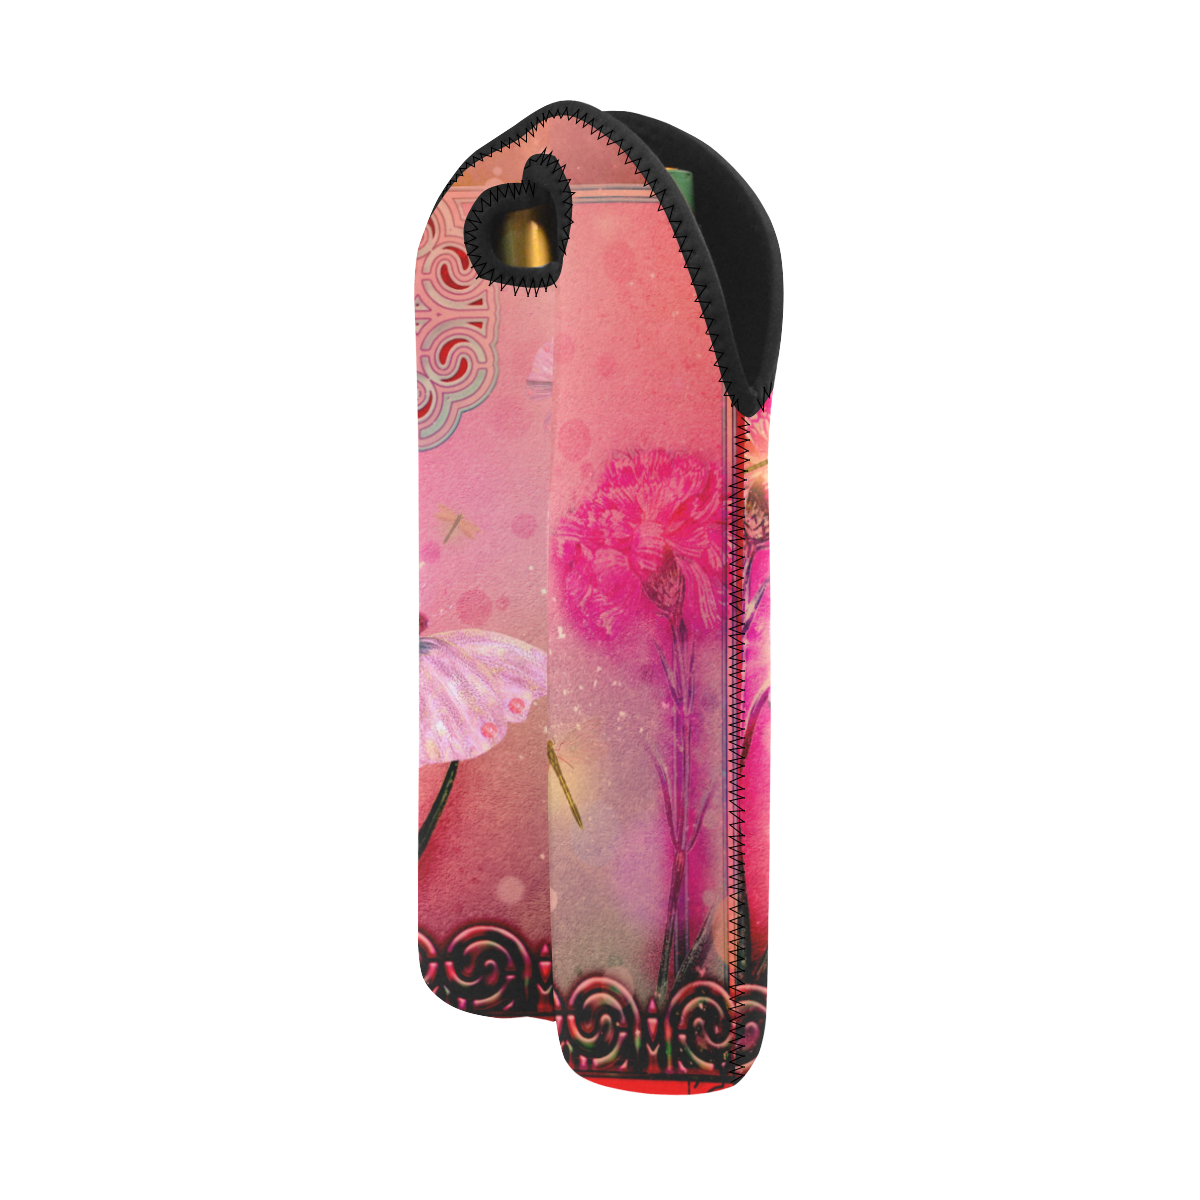 Wonderful butterflies 2-Bottle Neoprene Wine Bag